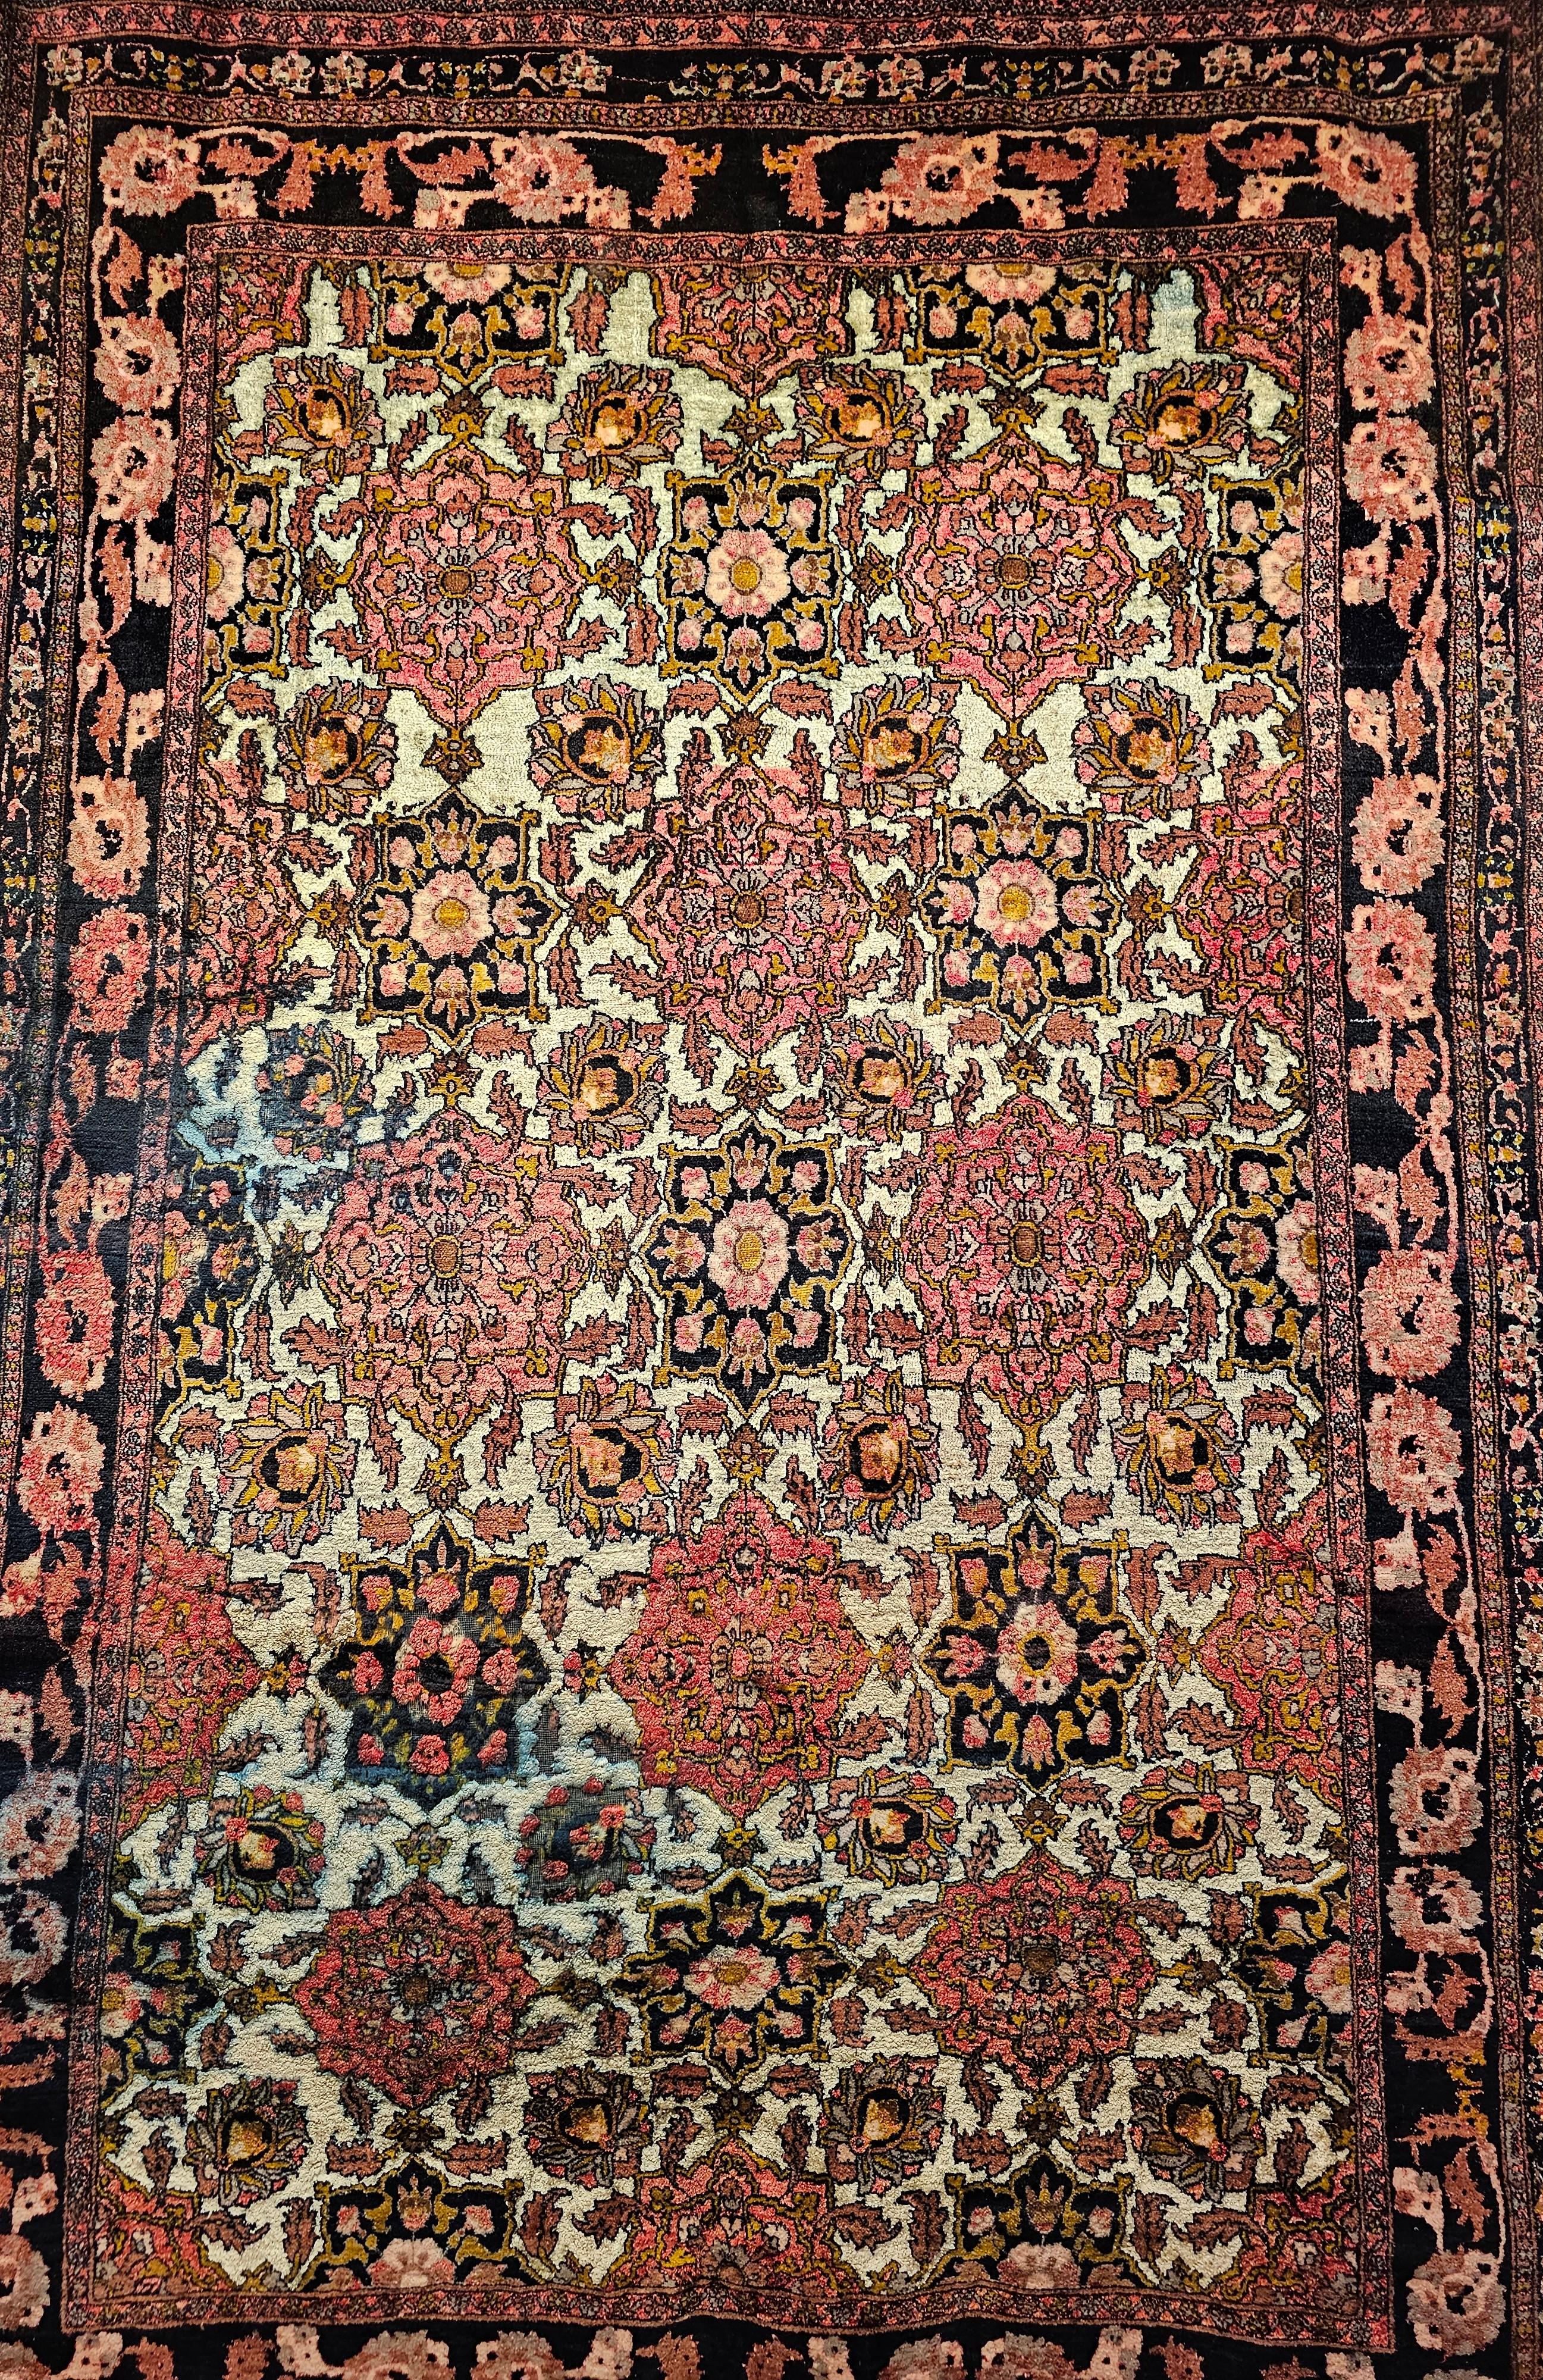 Handgeknüpfter Seidenteppich in Vintage-Raumgröße aus Herat, Afghanistan, um die Mitte des 19. Jahrhunderts.  Der Teppich ist mit einem Allover-Muster versehen, das aus großen Medaillons in roten, braunen und schwarzen Farben besteht.  Die